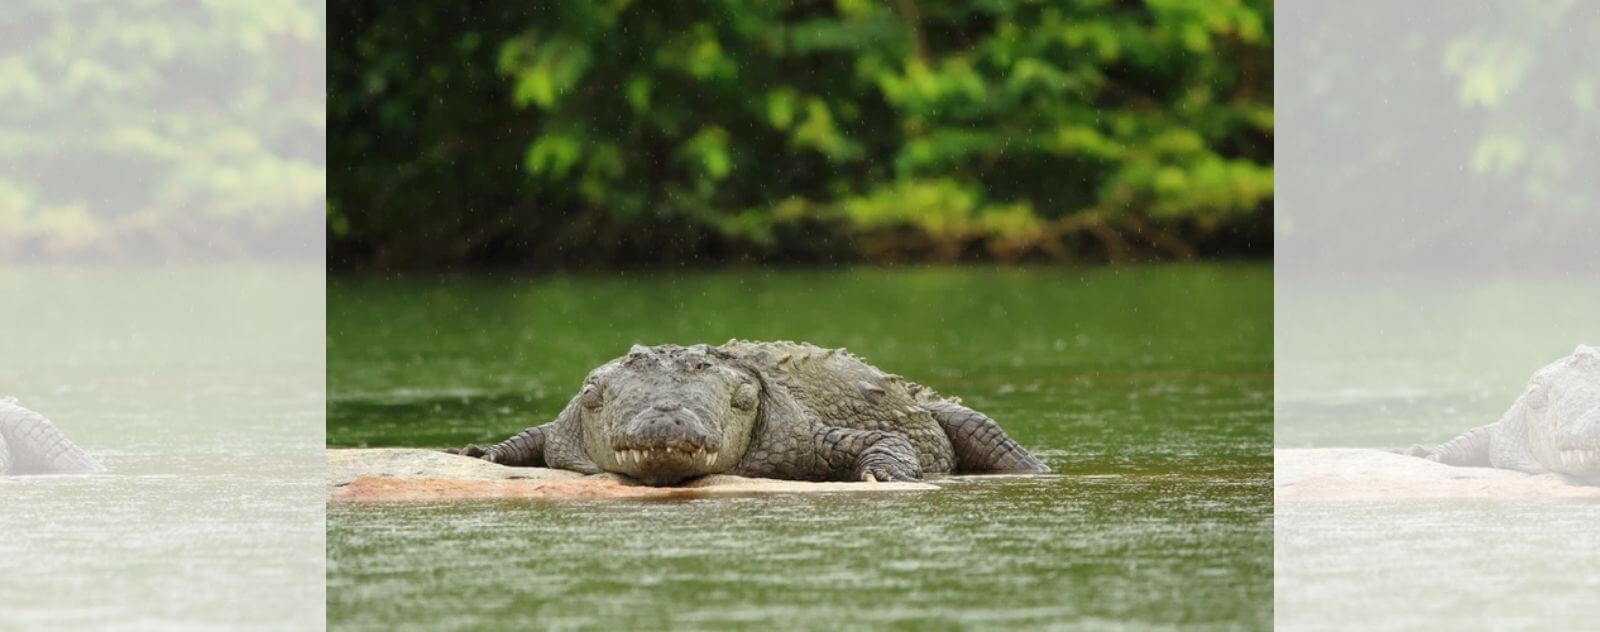 Le Crocodile d'Eau Salée est le PLus Grand Crocodile du Monde